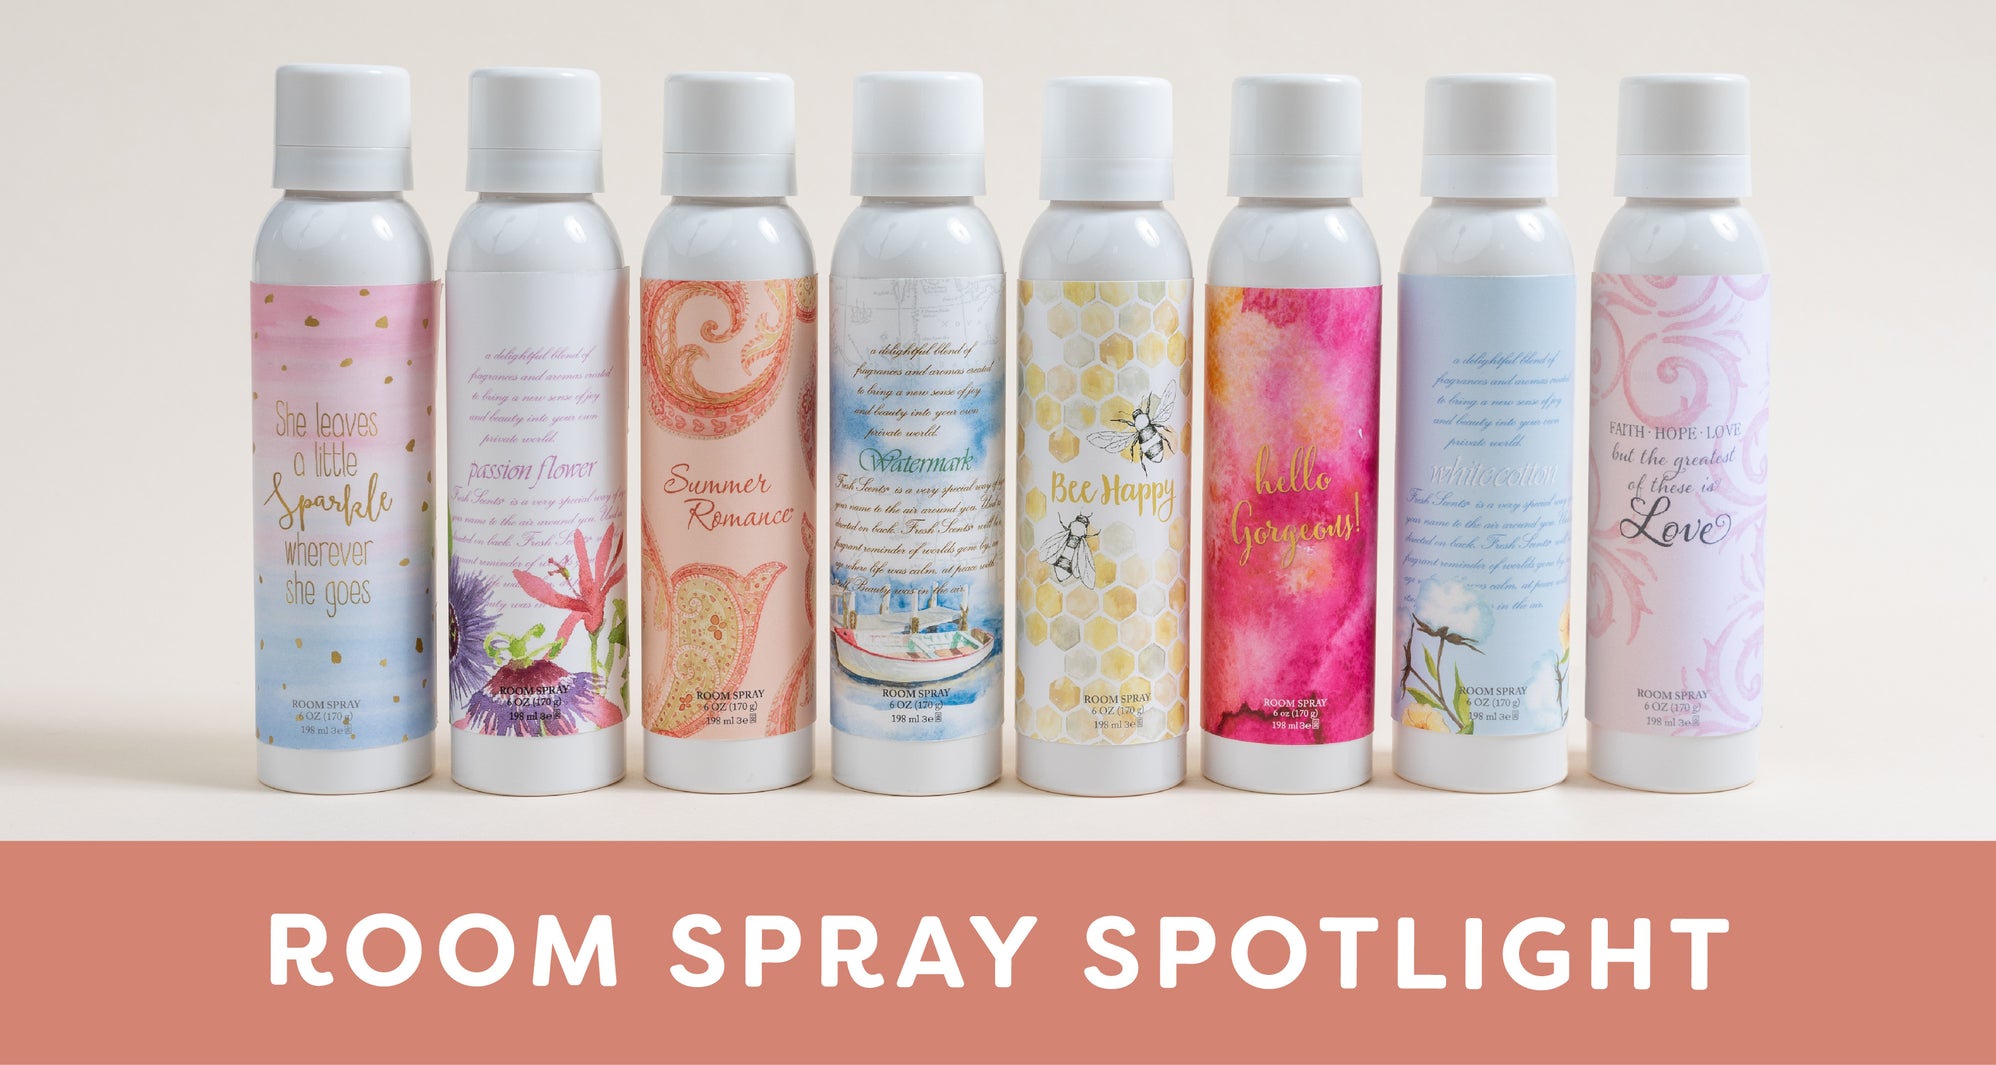 Room Spray Spotlight: Eight designed room sprays lined up